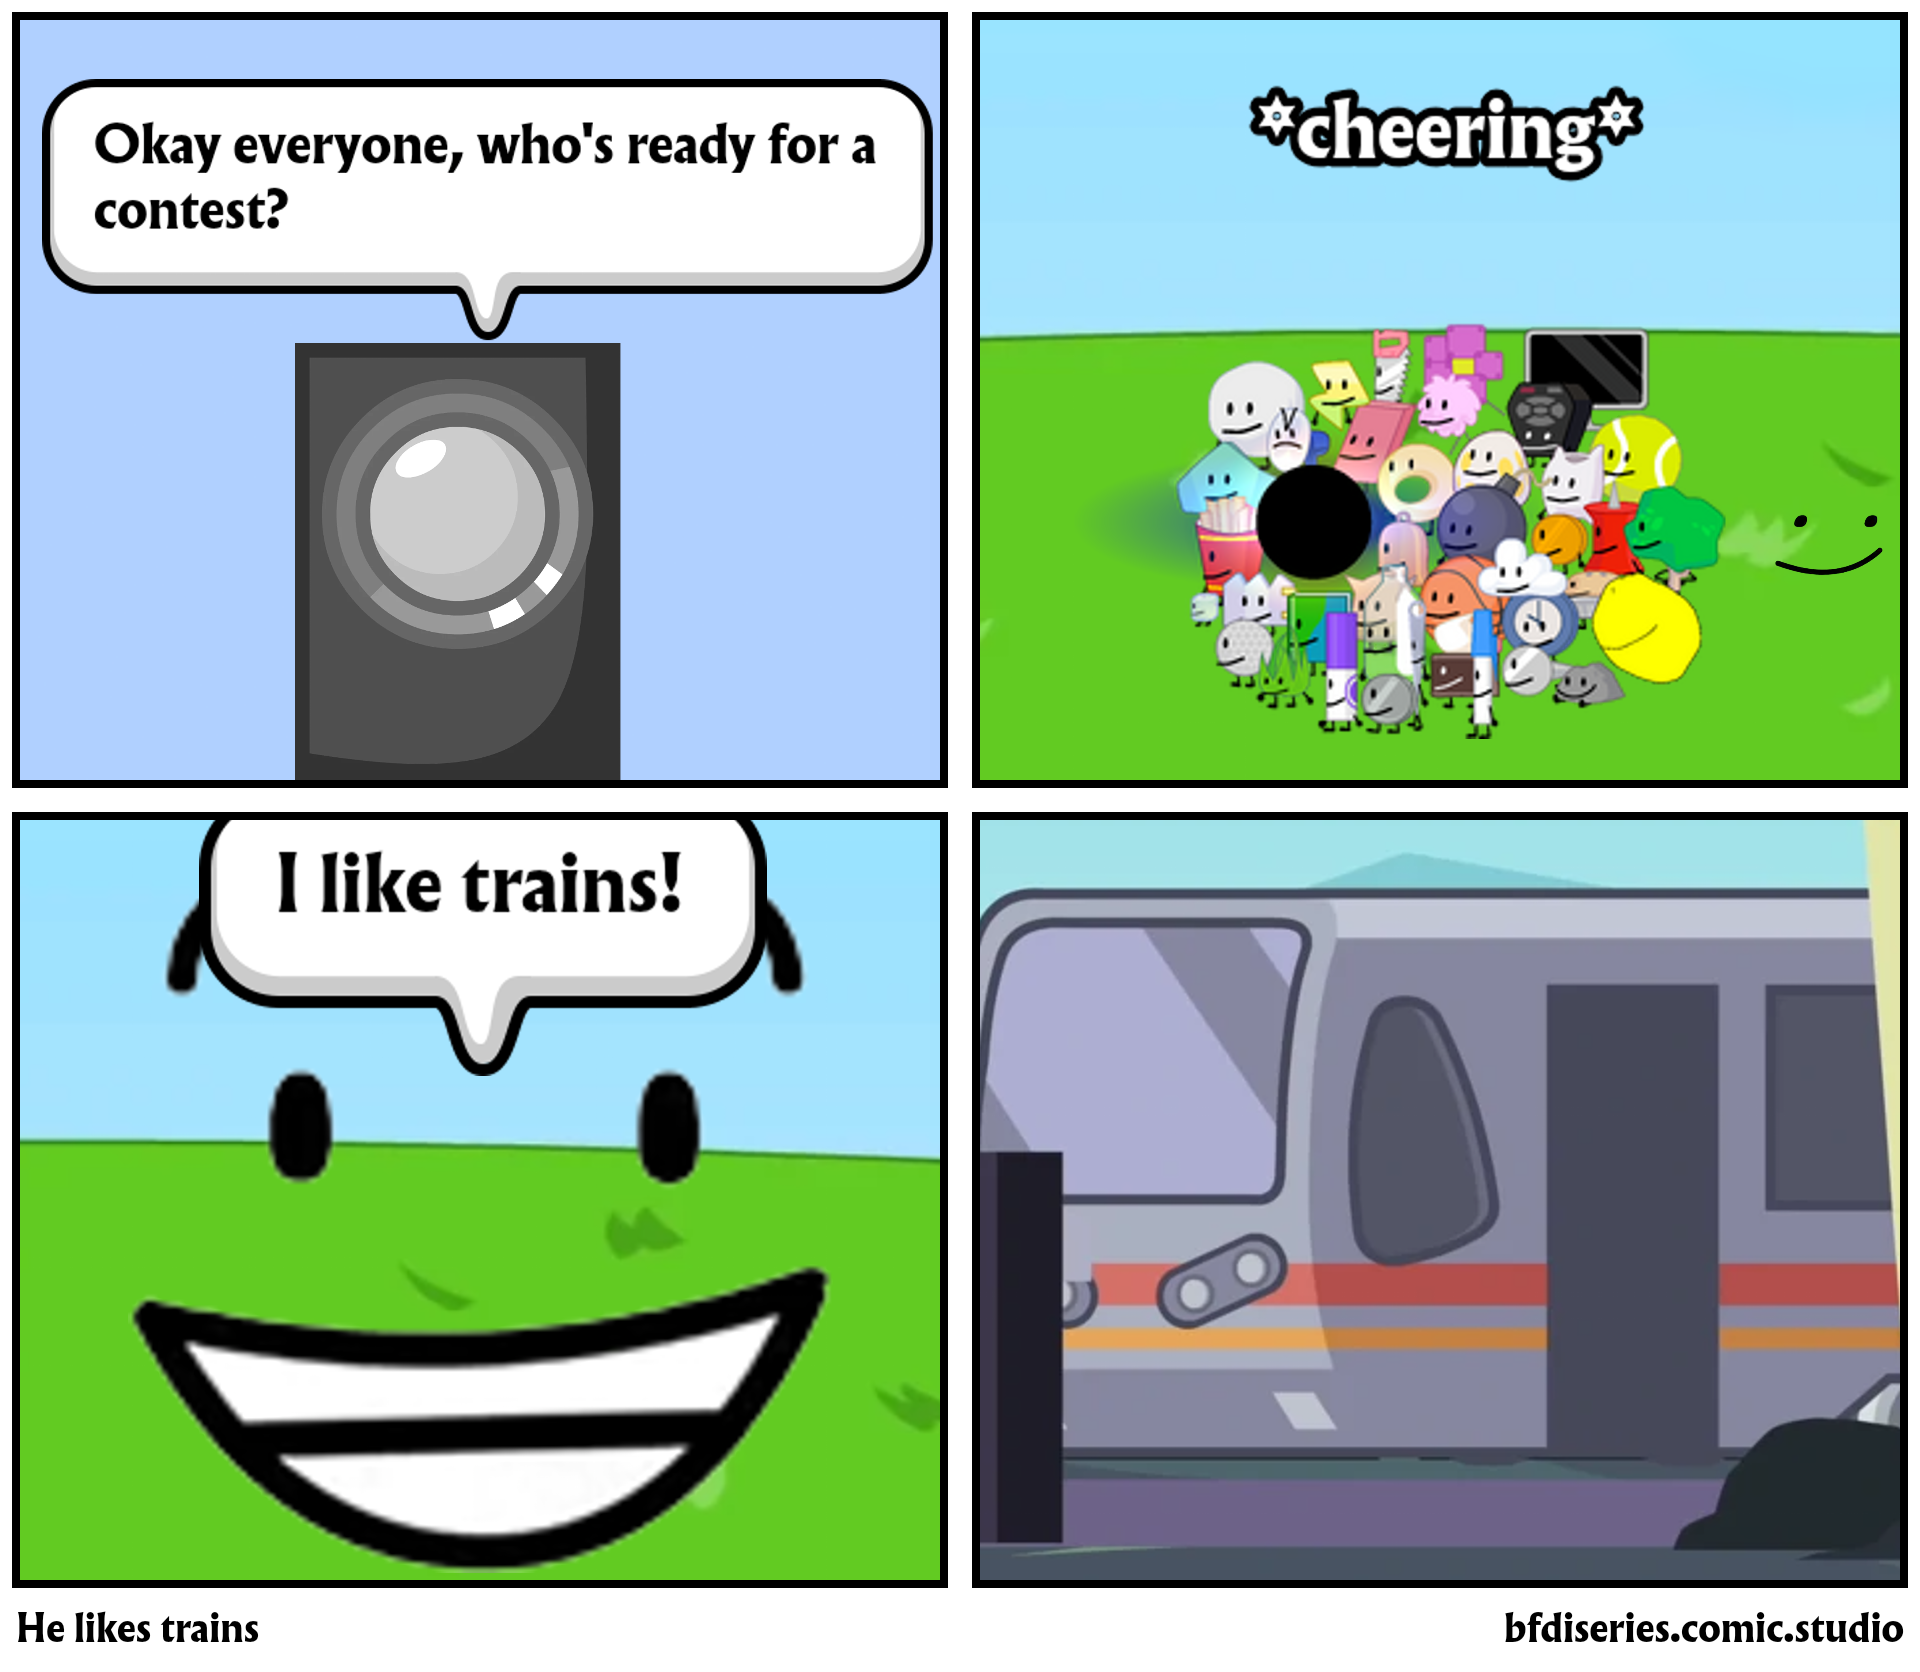 He likes trains